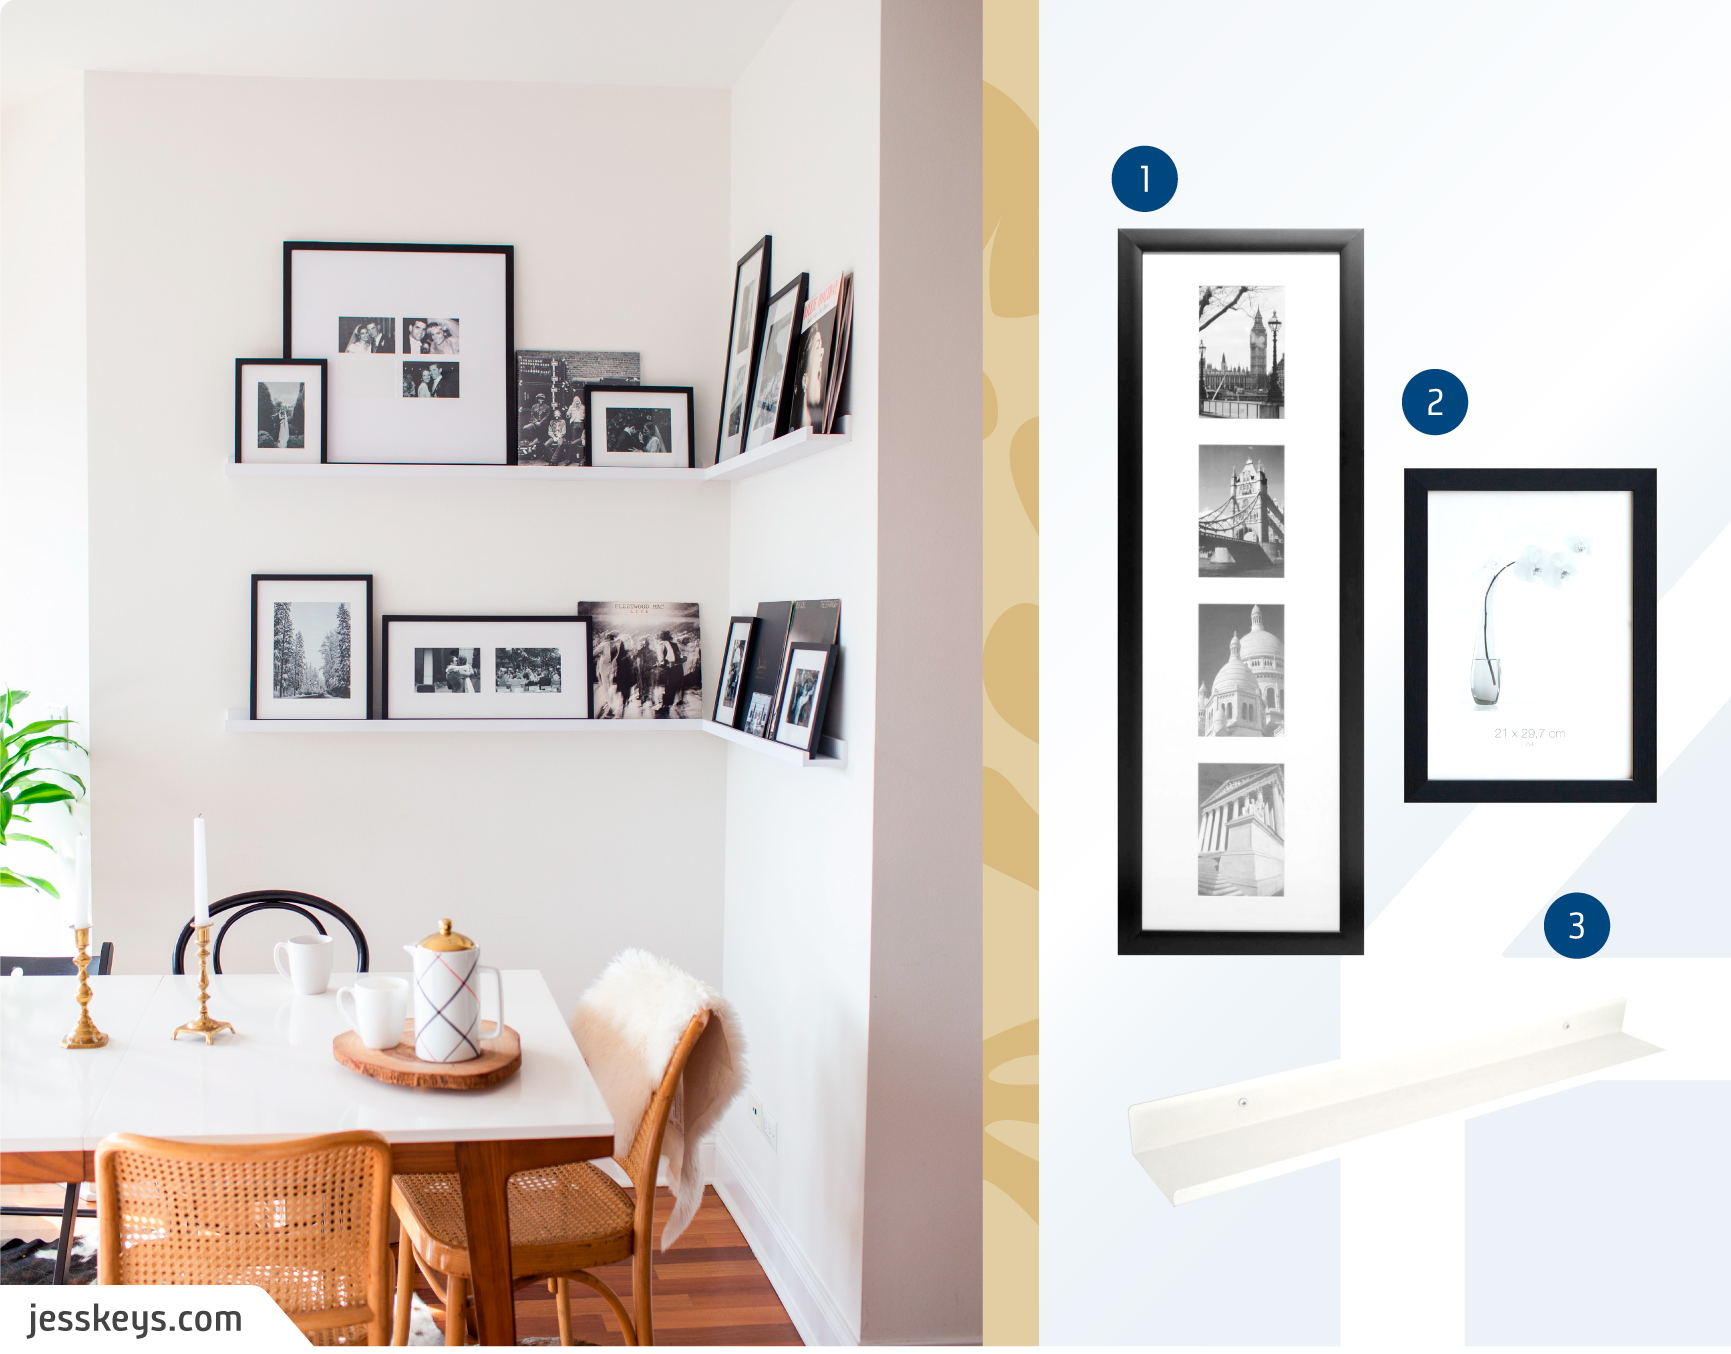 Moodboard de marcos y repisas disponibles en Sodimac junto a una foto de un comedor con un muro galería de marcos negros con fotos en blanco y negro dispuestos en dos estantes blancos.